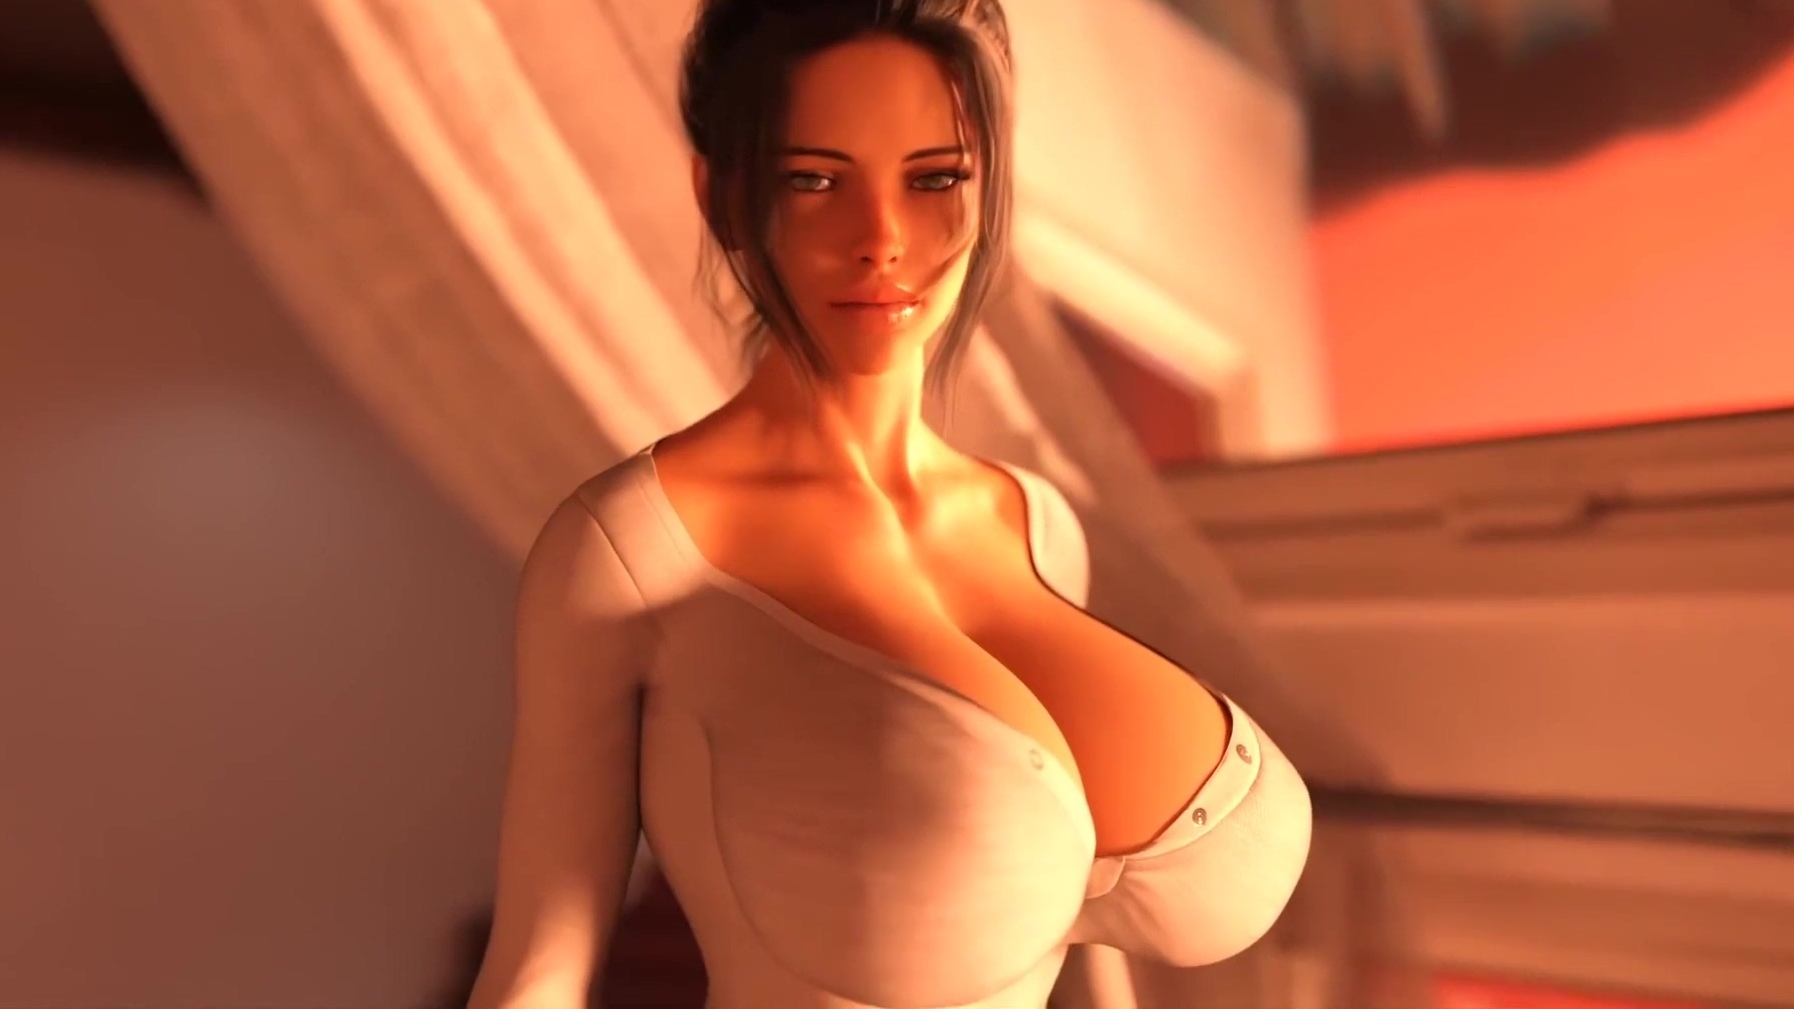 Animated porn boobs